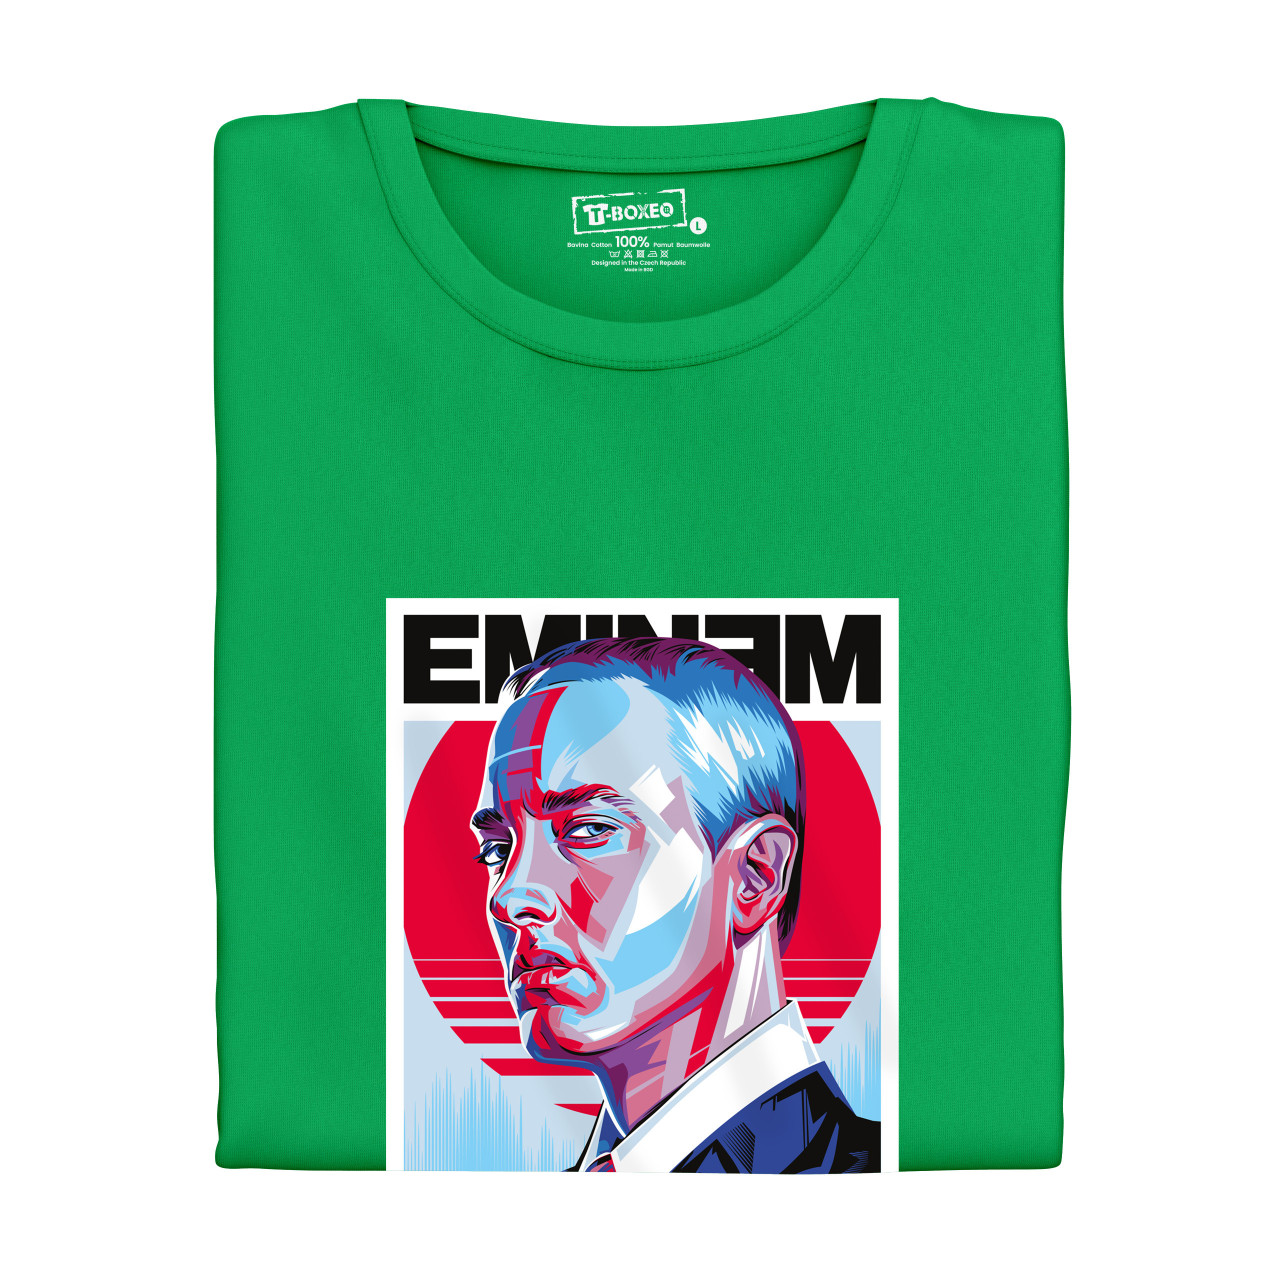 Dámské tričko s potiskem “Eminem”